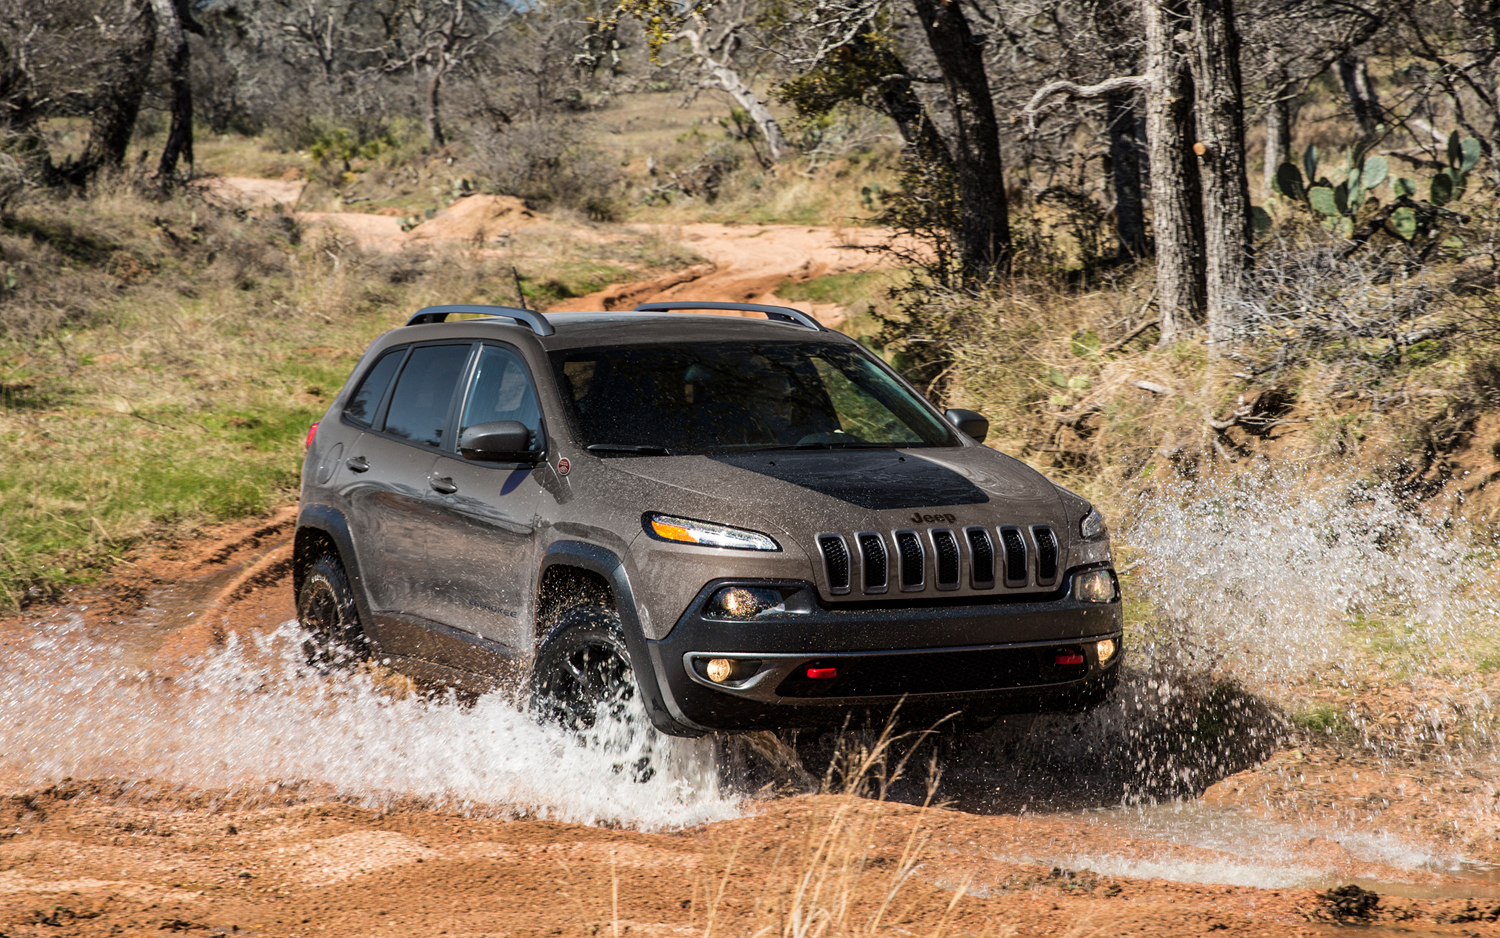 Jeep Cherokee Trail Hawk Off Road Testing Dirt HD Walls